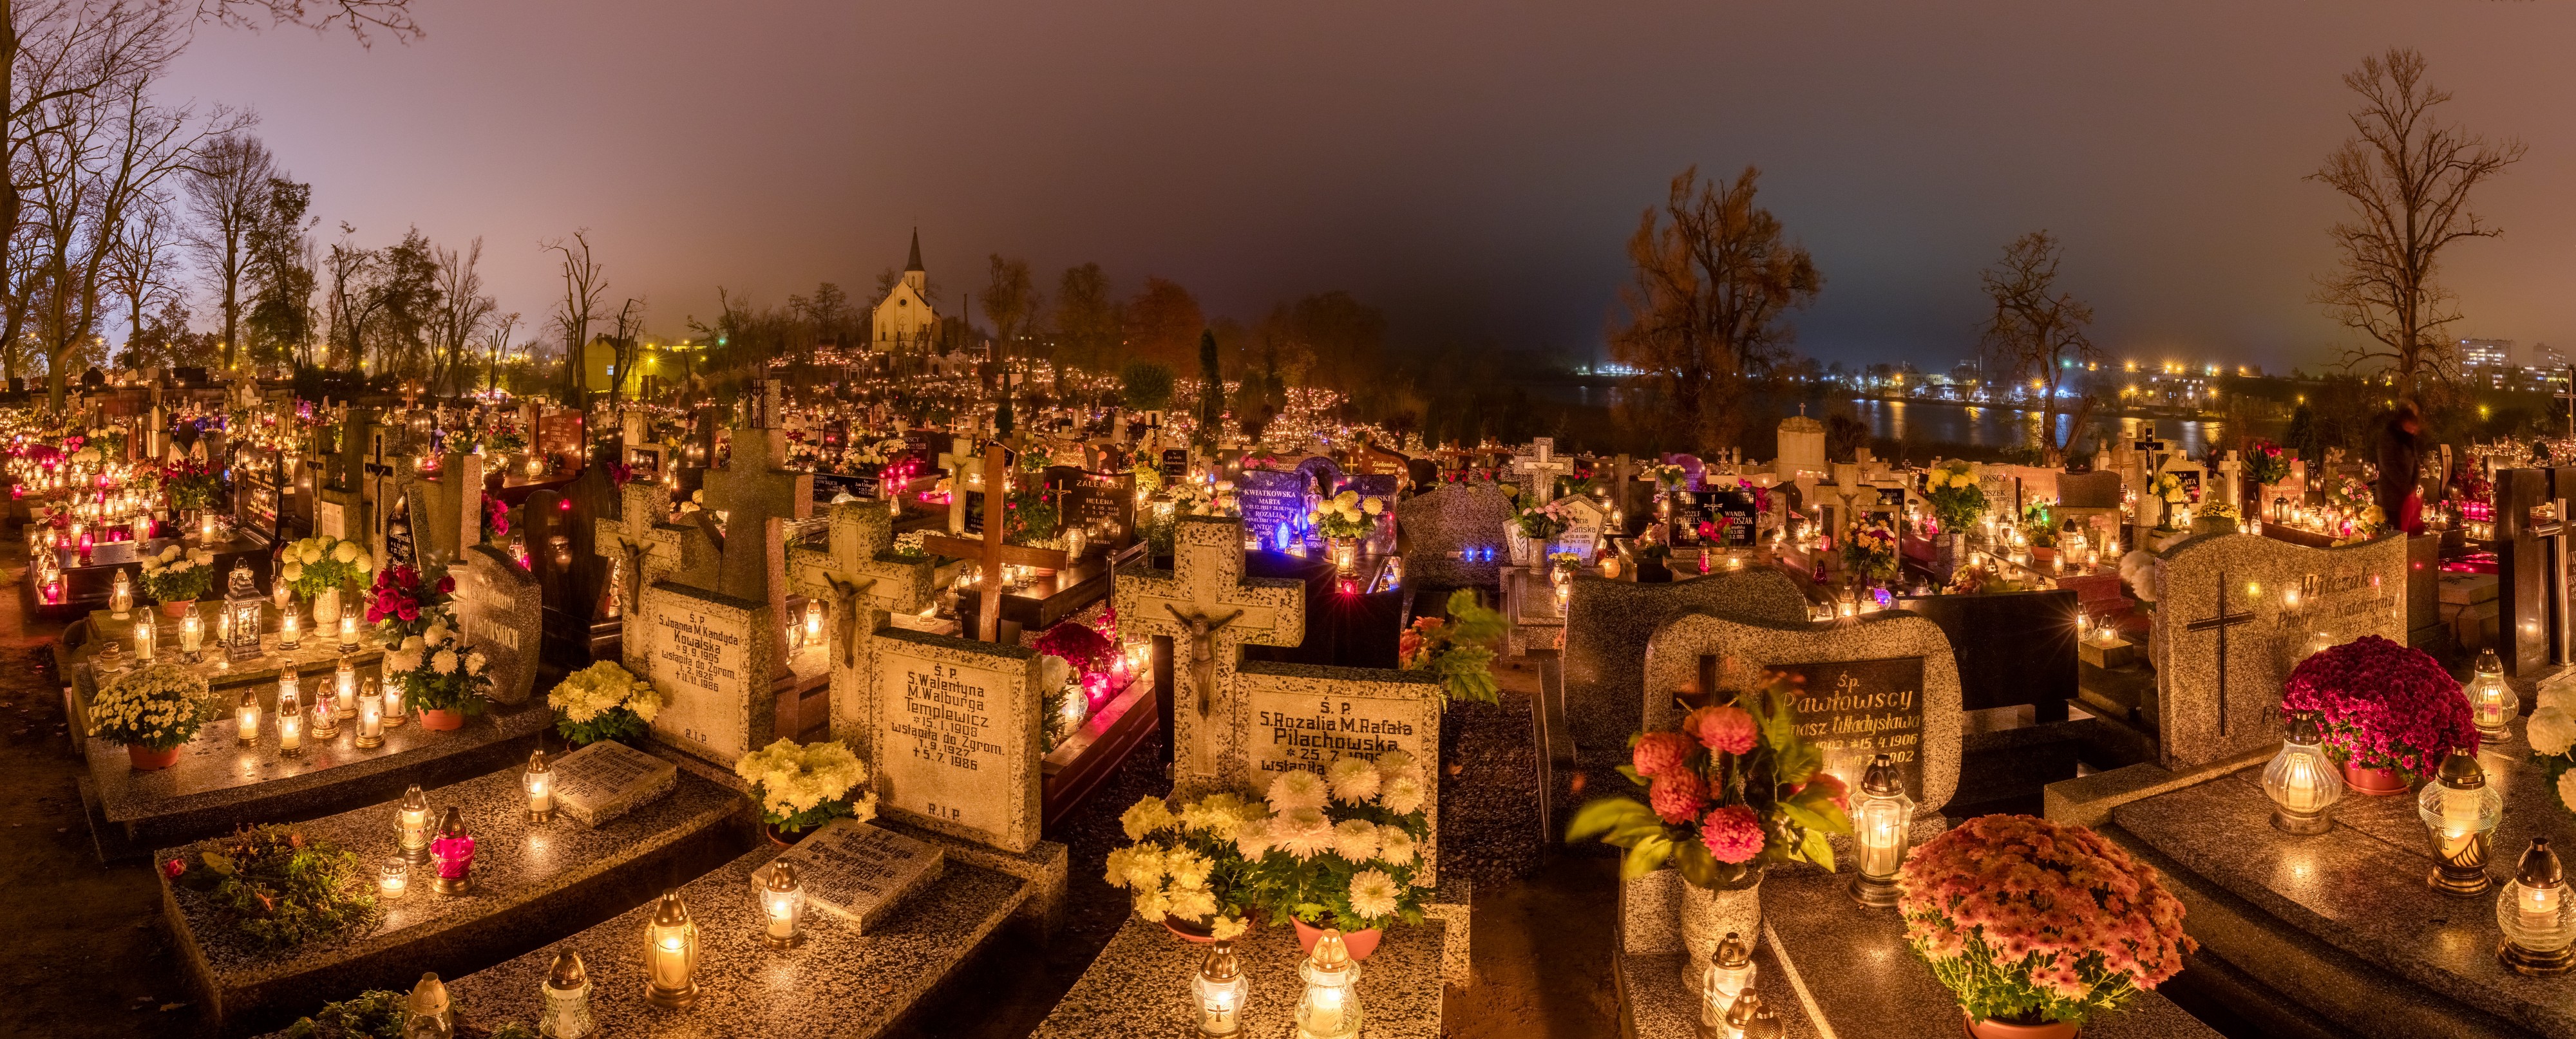 Celebración de Todos los Santos, cementerio de la Santa Cruz, Gniezno, Polonia, 2017-11-01, DD 19-30 PAN HDR